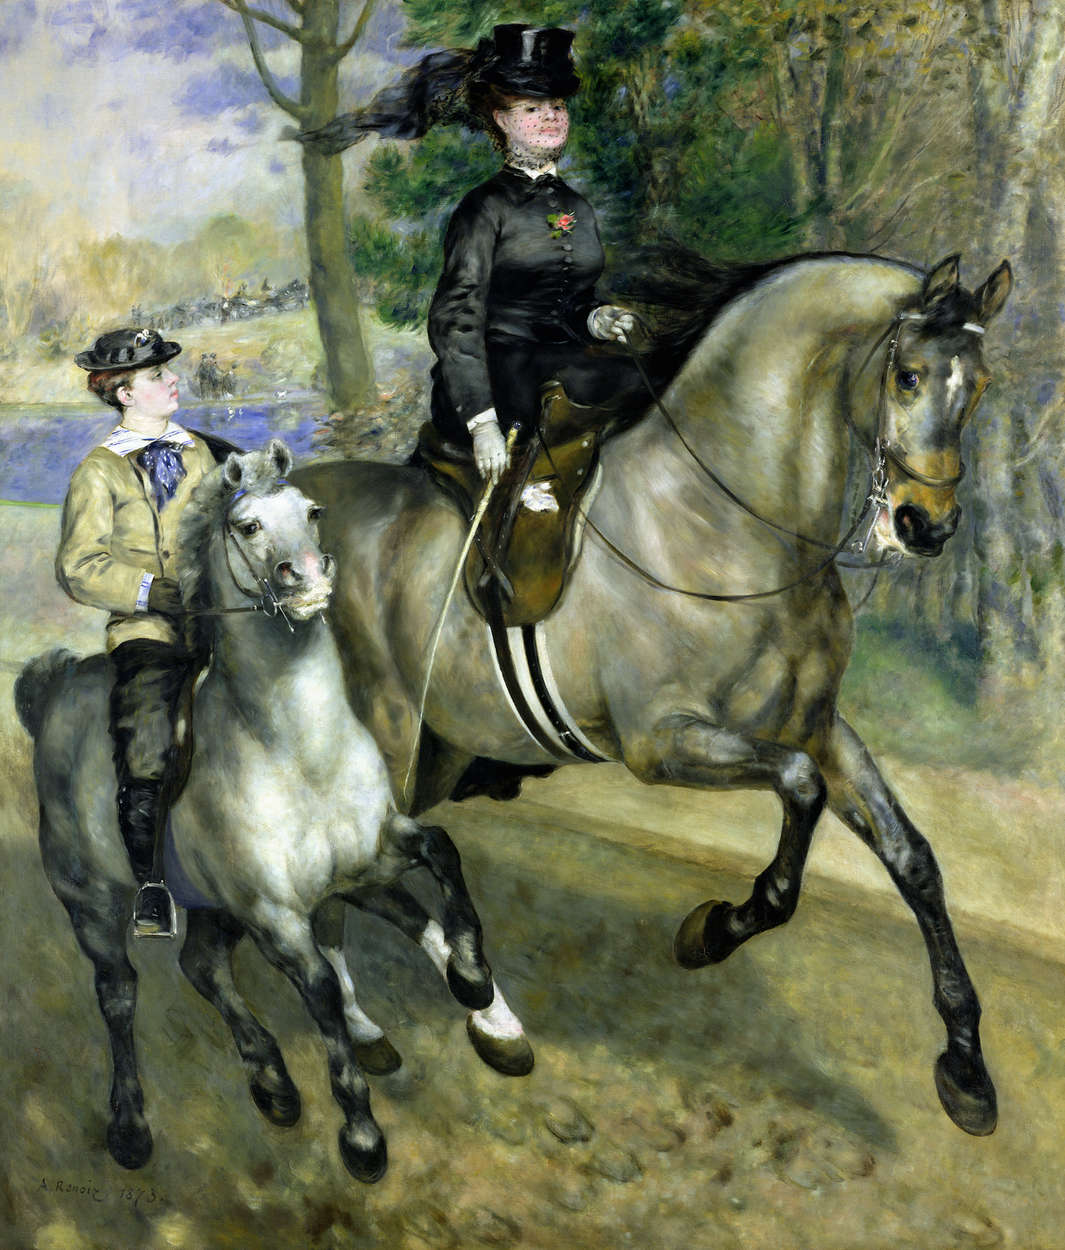             Papier peint "Cavalière au Bois de Boulogne" de Pierre Auguste Renoir
        